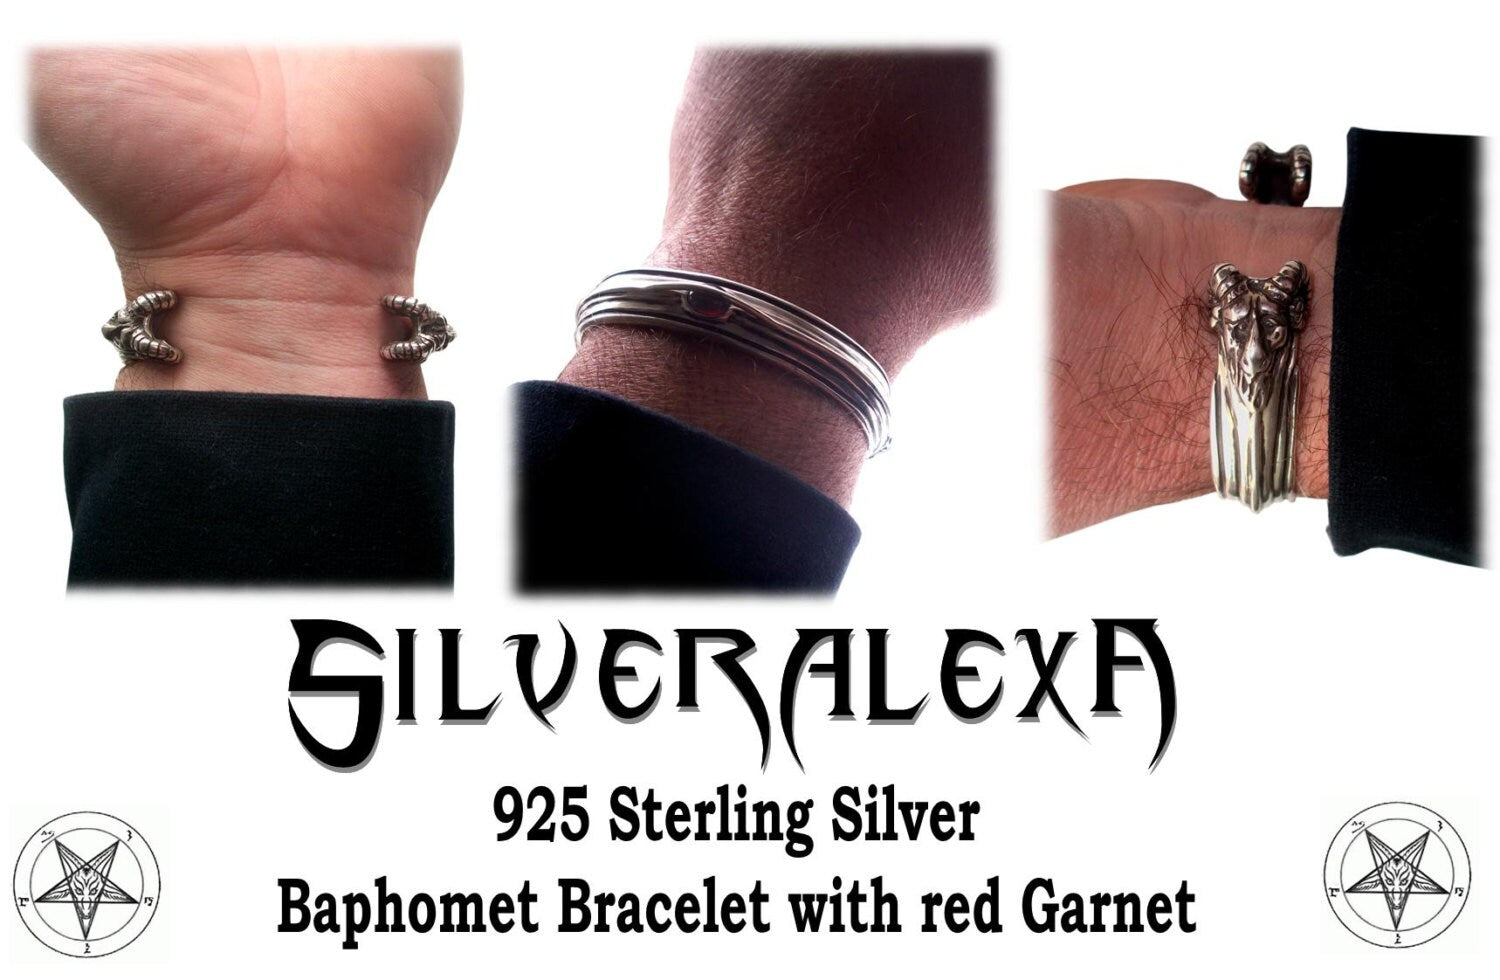 Baphomet Bracelet - Sterling Silver Bracelet Bighorn Baphomet - Evil Sabbatic Goat  - Ram Devil - with red Garnet